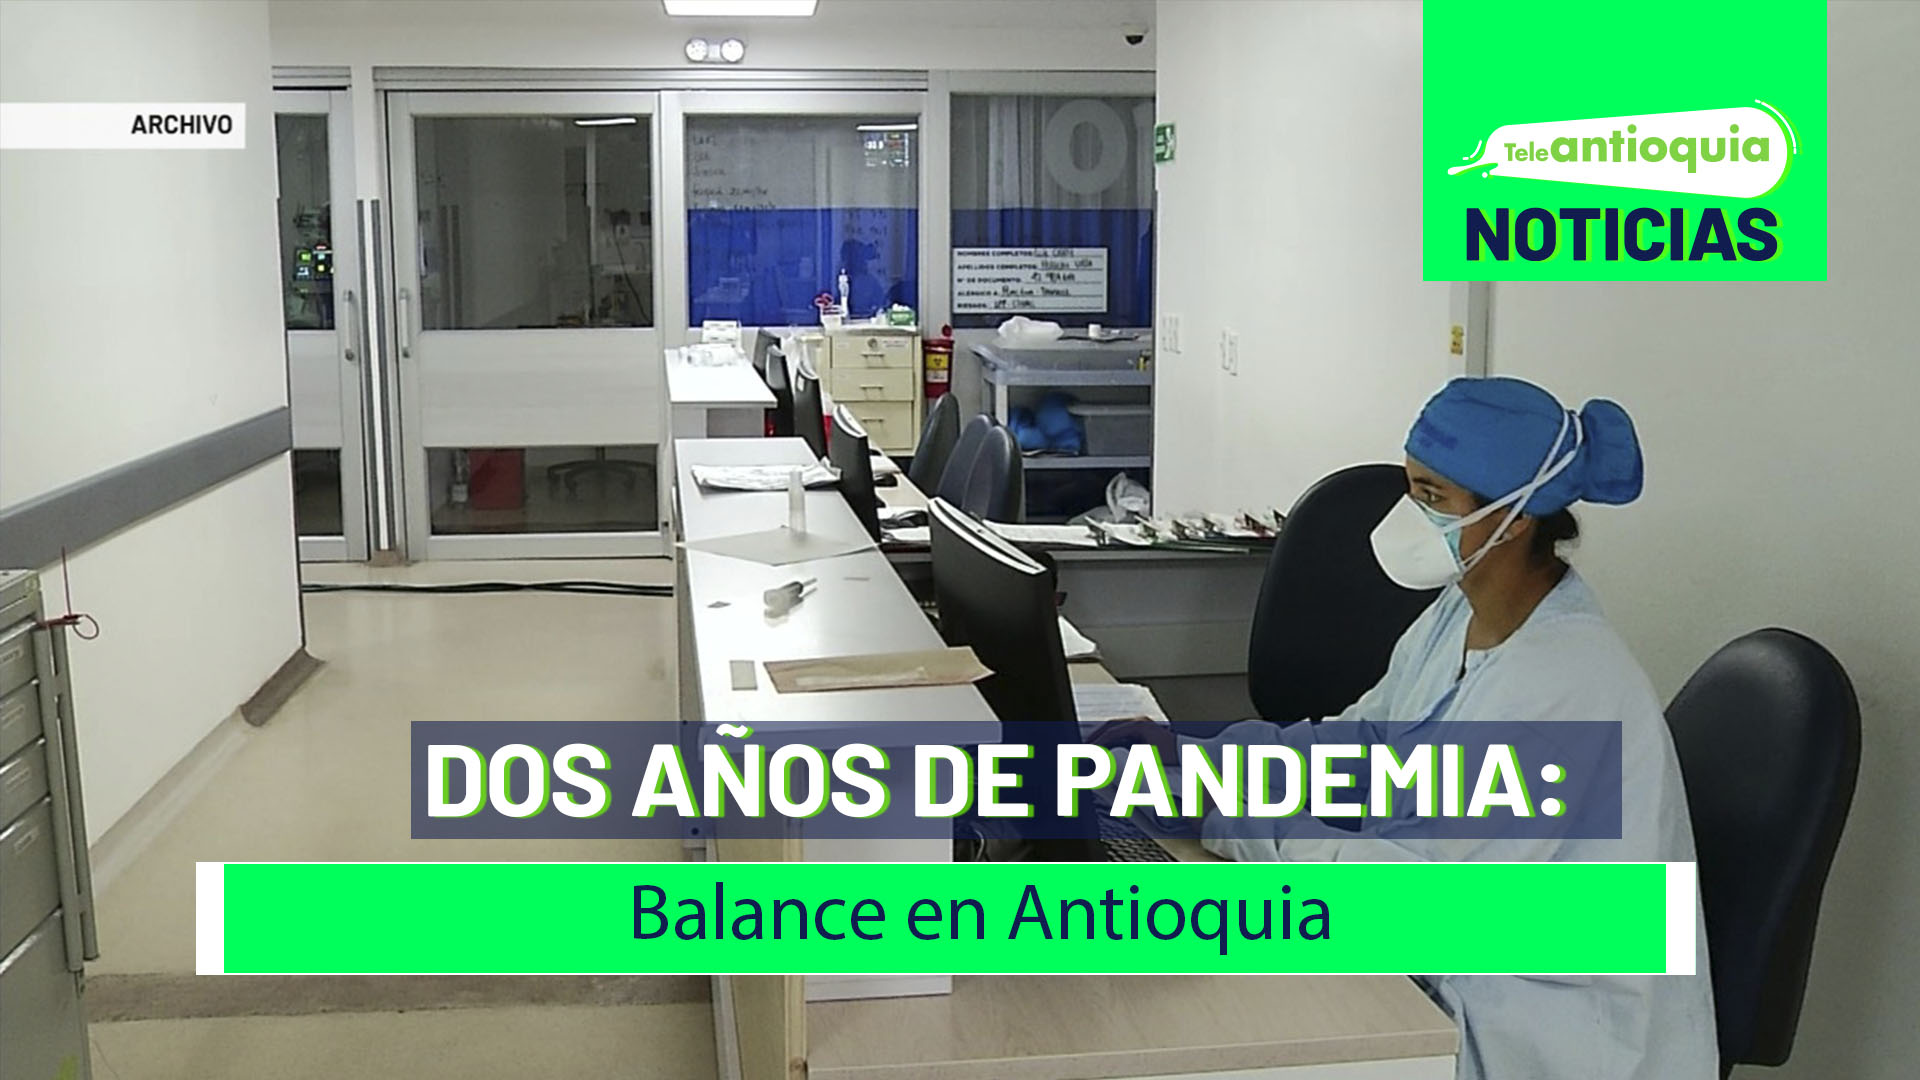 Dos años de pandemia: balance en Antioquia